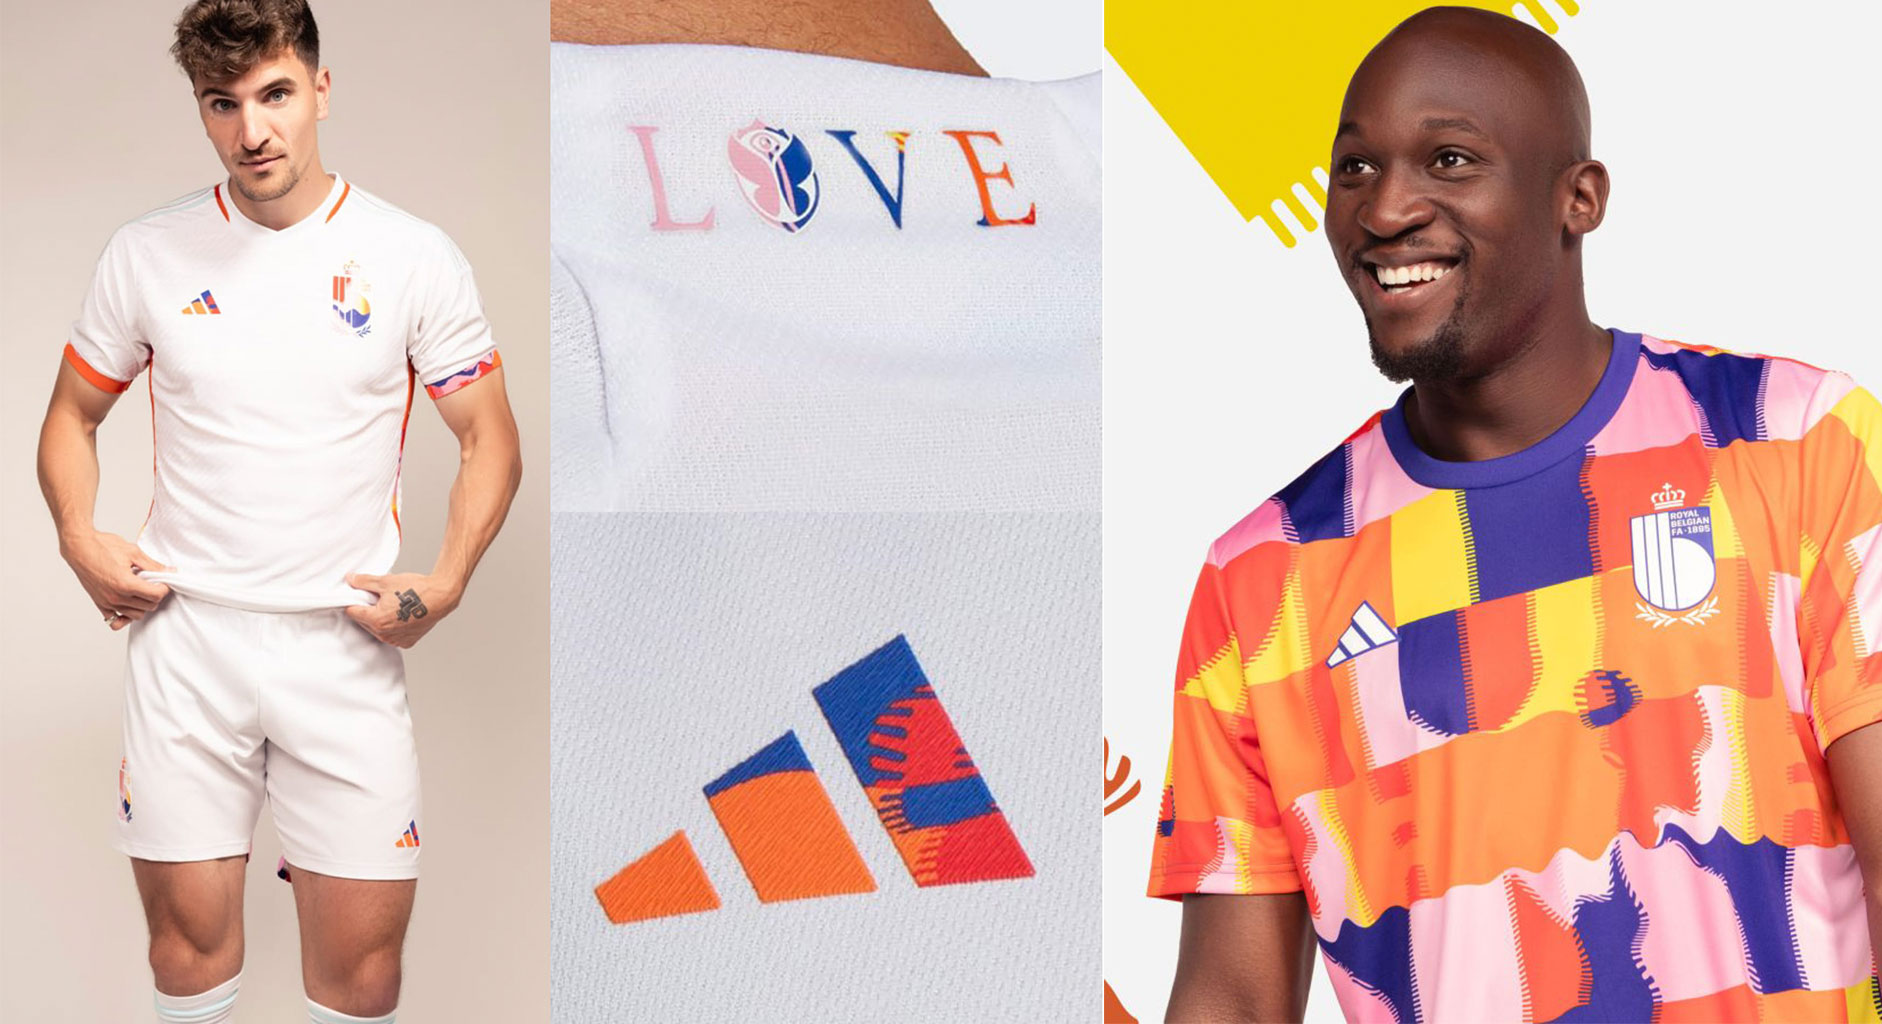 Trampas matriz Es Nueva prohibición de la FIFA: le exigió a la selección de Bélgica eliminar  la palabra “Love” de su camiseta suplente - Infobae